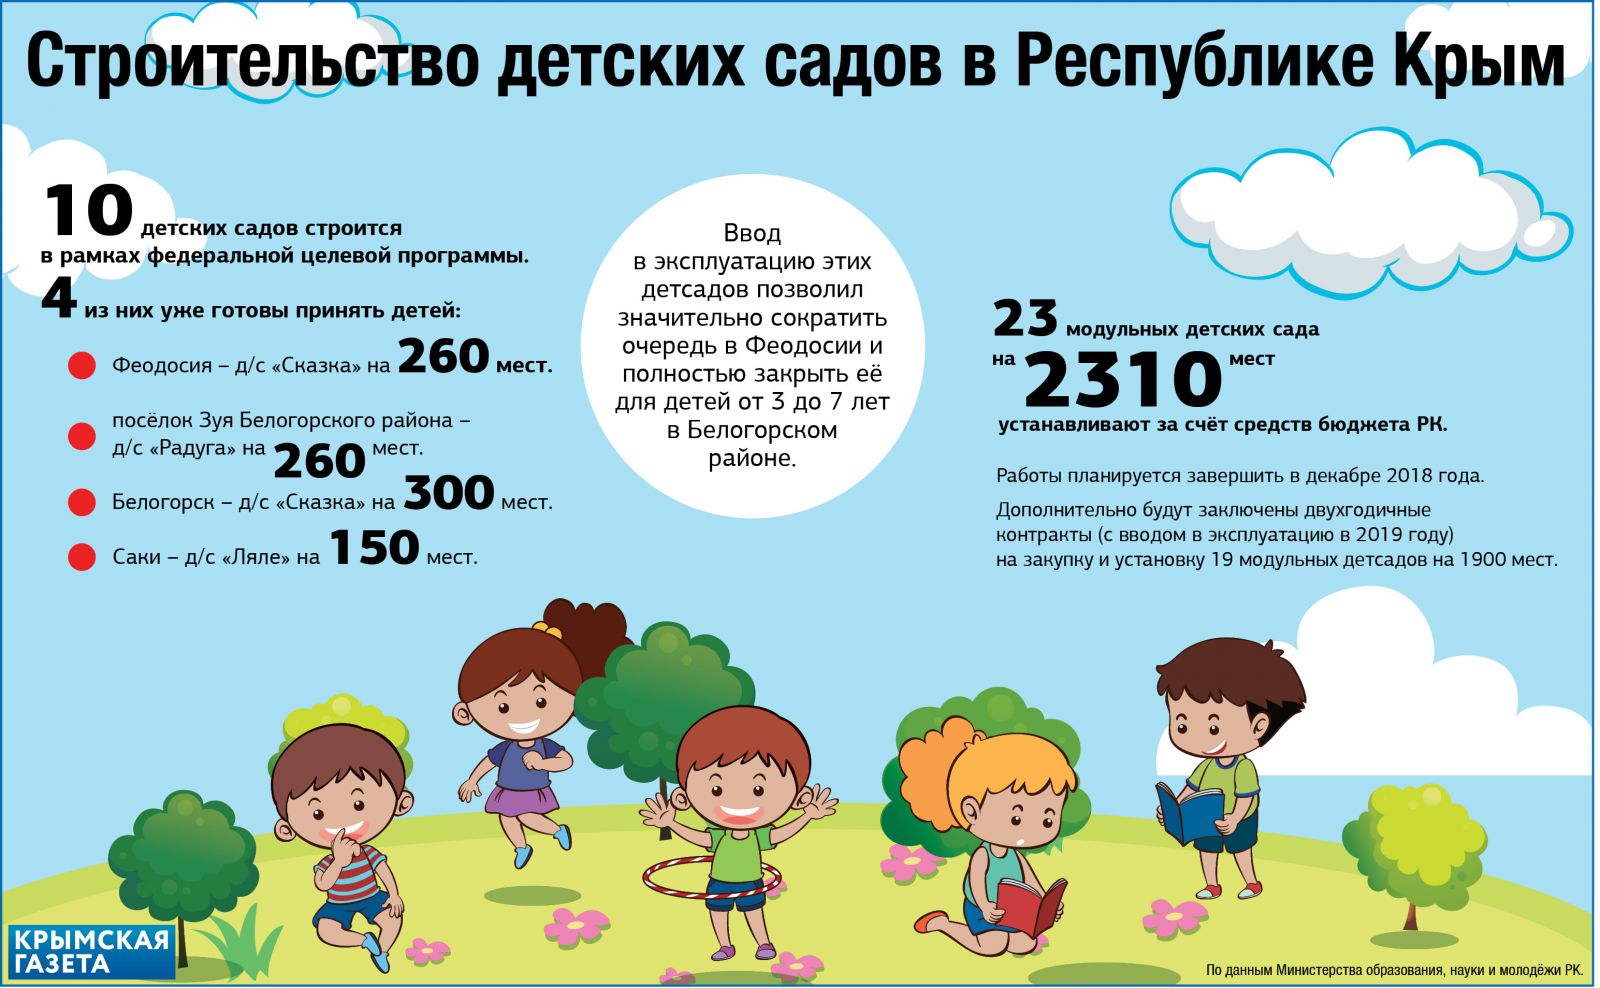 Строительство детских садов в Крыму - инфографика - Крымская газета